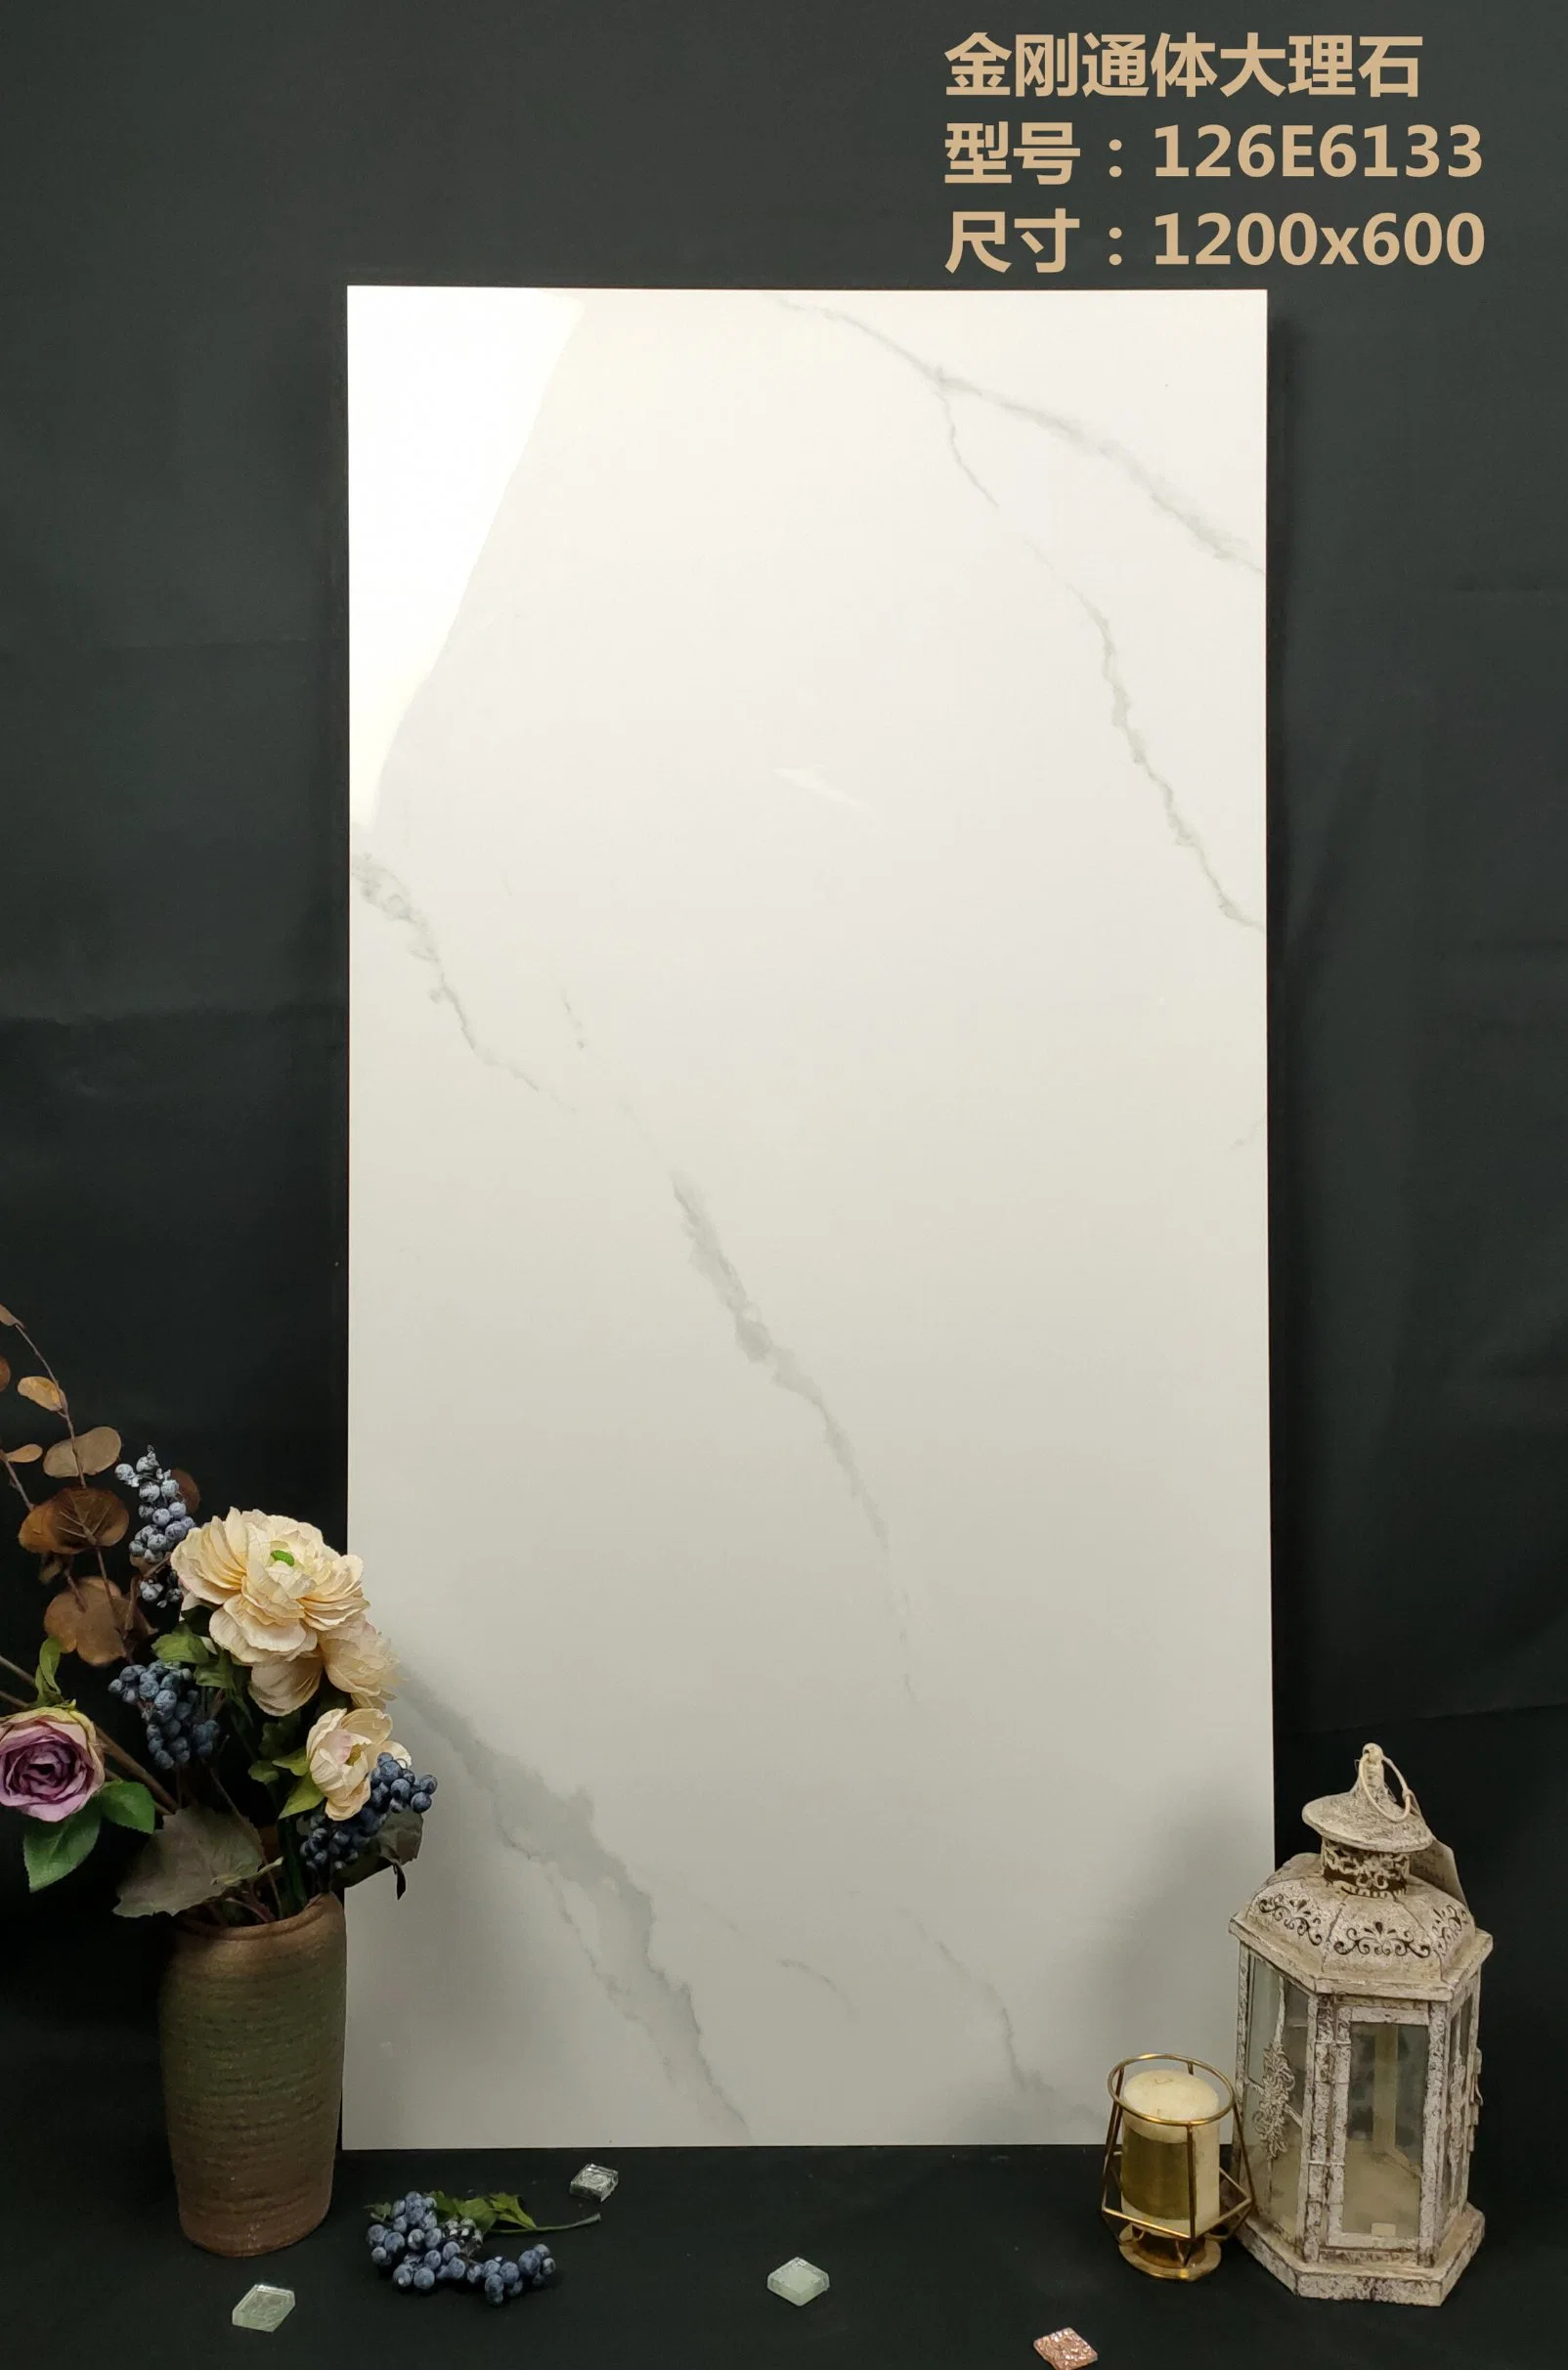 Piso em porcelana branca em mármore chinês de tamanho completo 60X120 e. Azulejo de parede